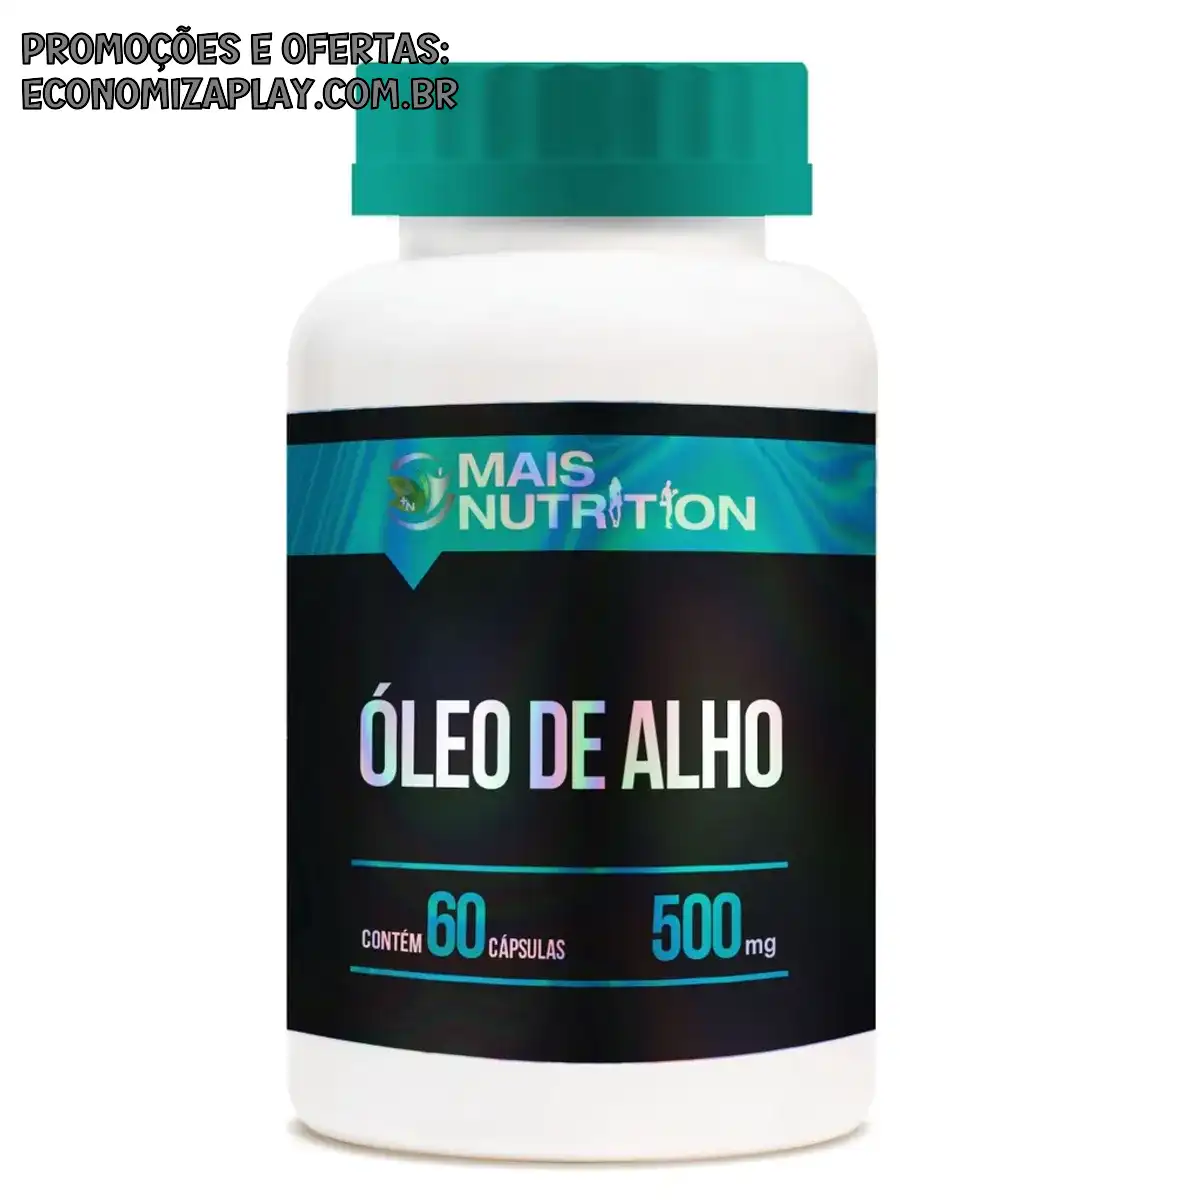 Oleo de Alho 500mg 60 capsulas Mais Nutrition